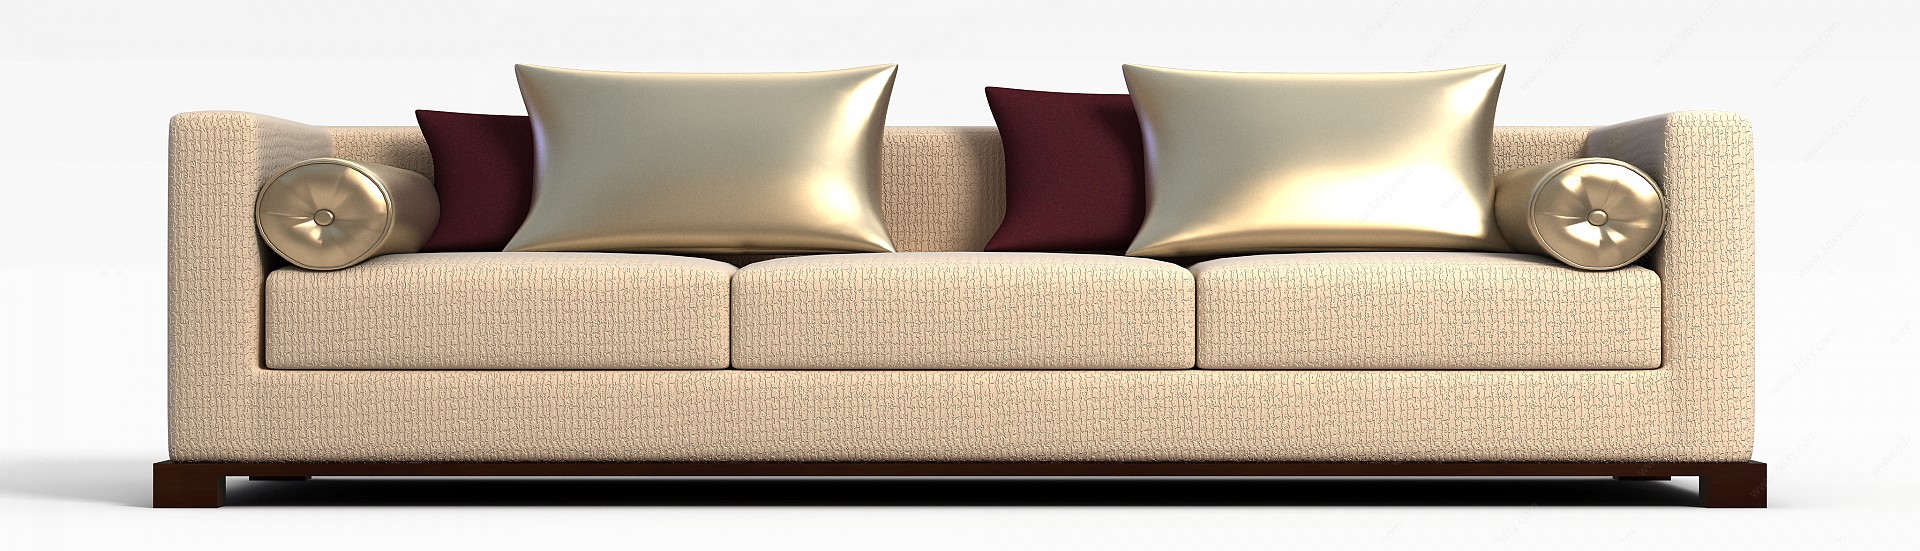 精美客厅沙发3D模型